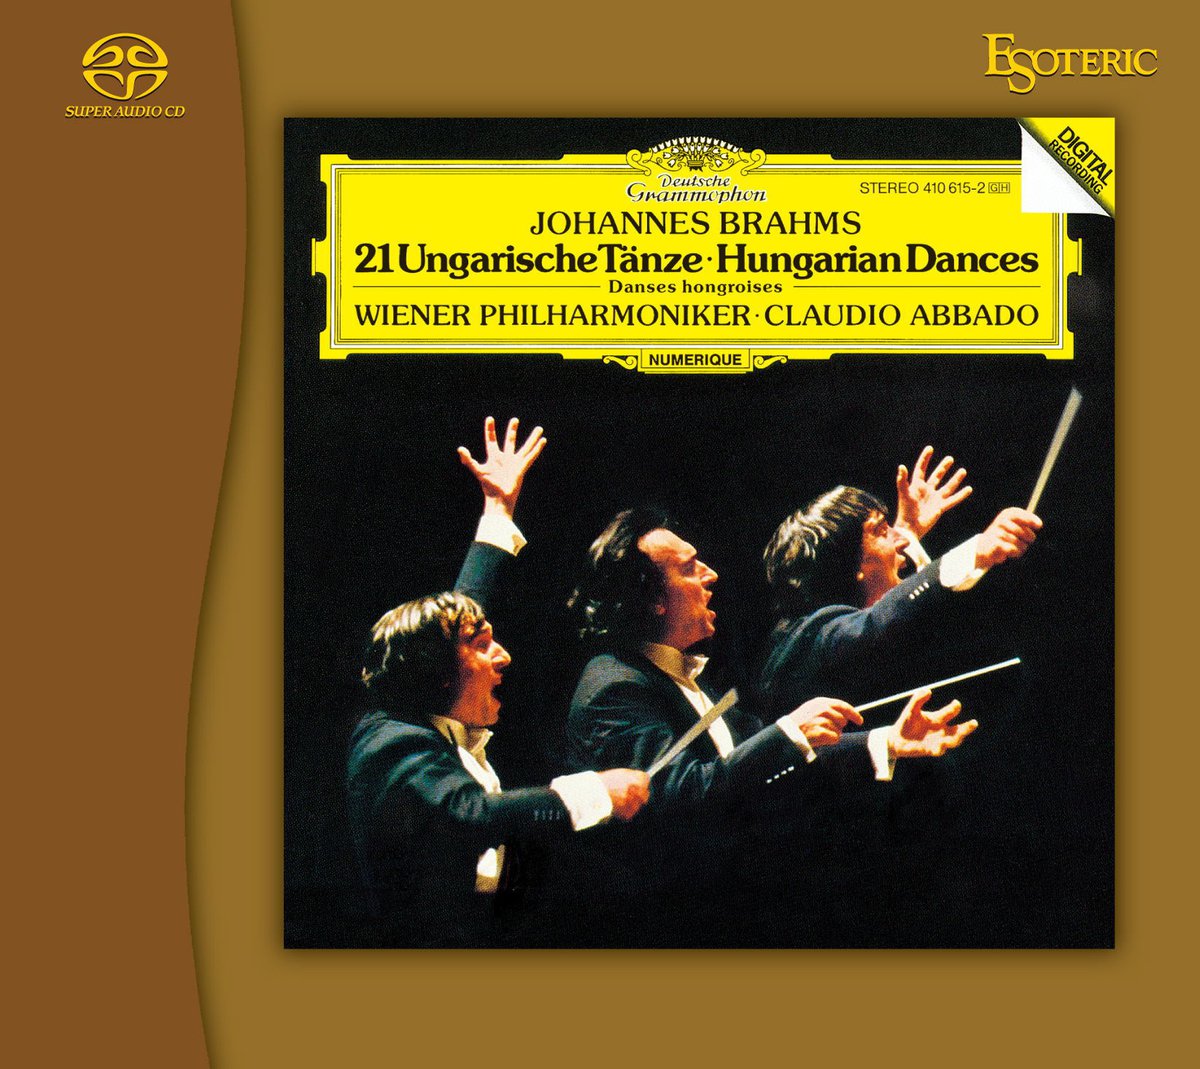 エソテリック、SACD「名盤復刻シリーズ」にハンガリー舞曲、ハイドンの